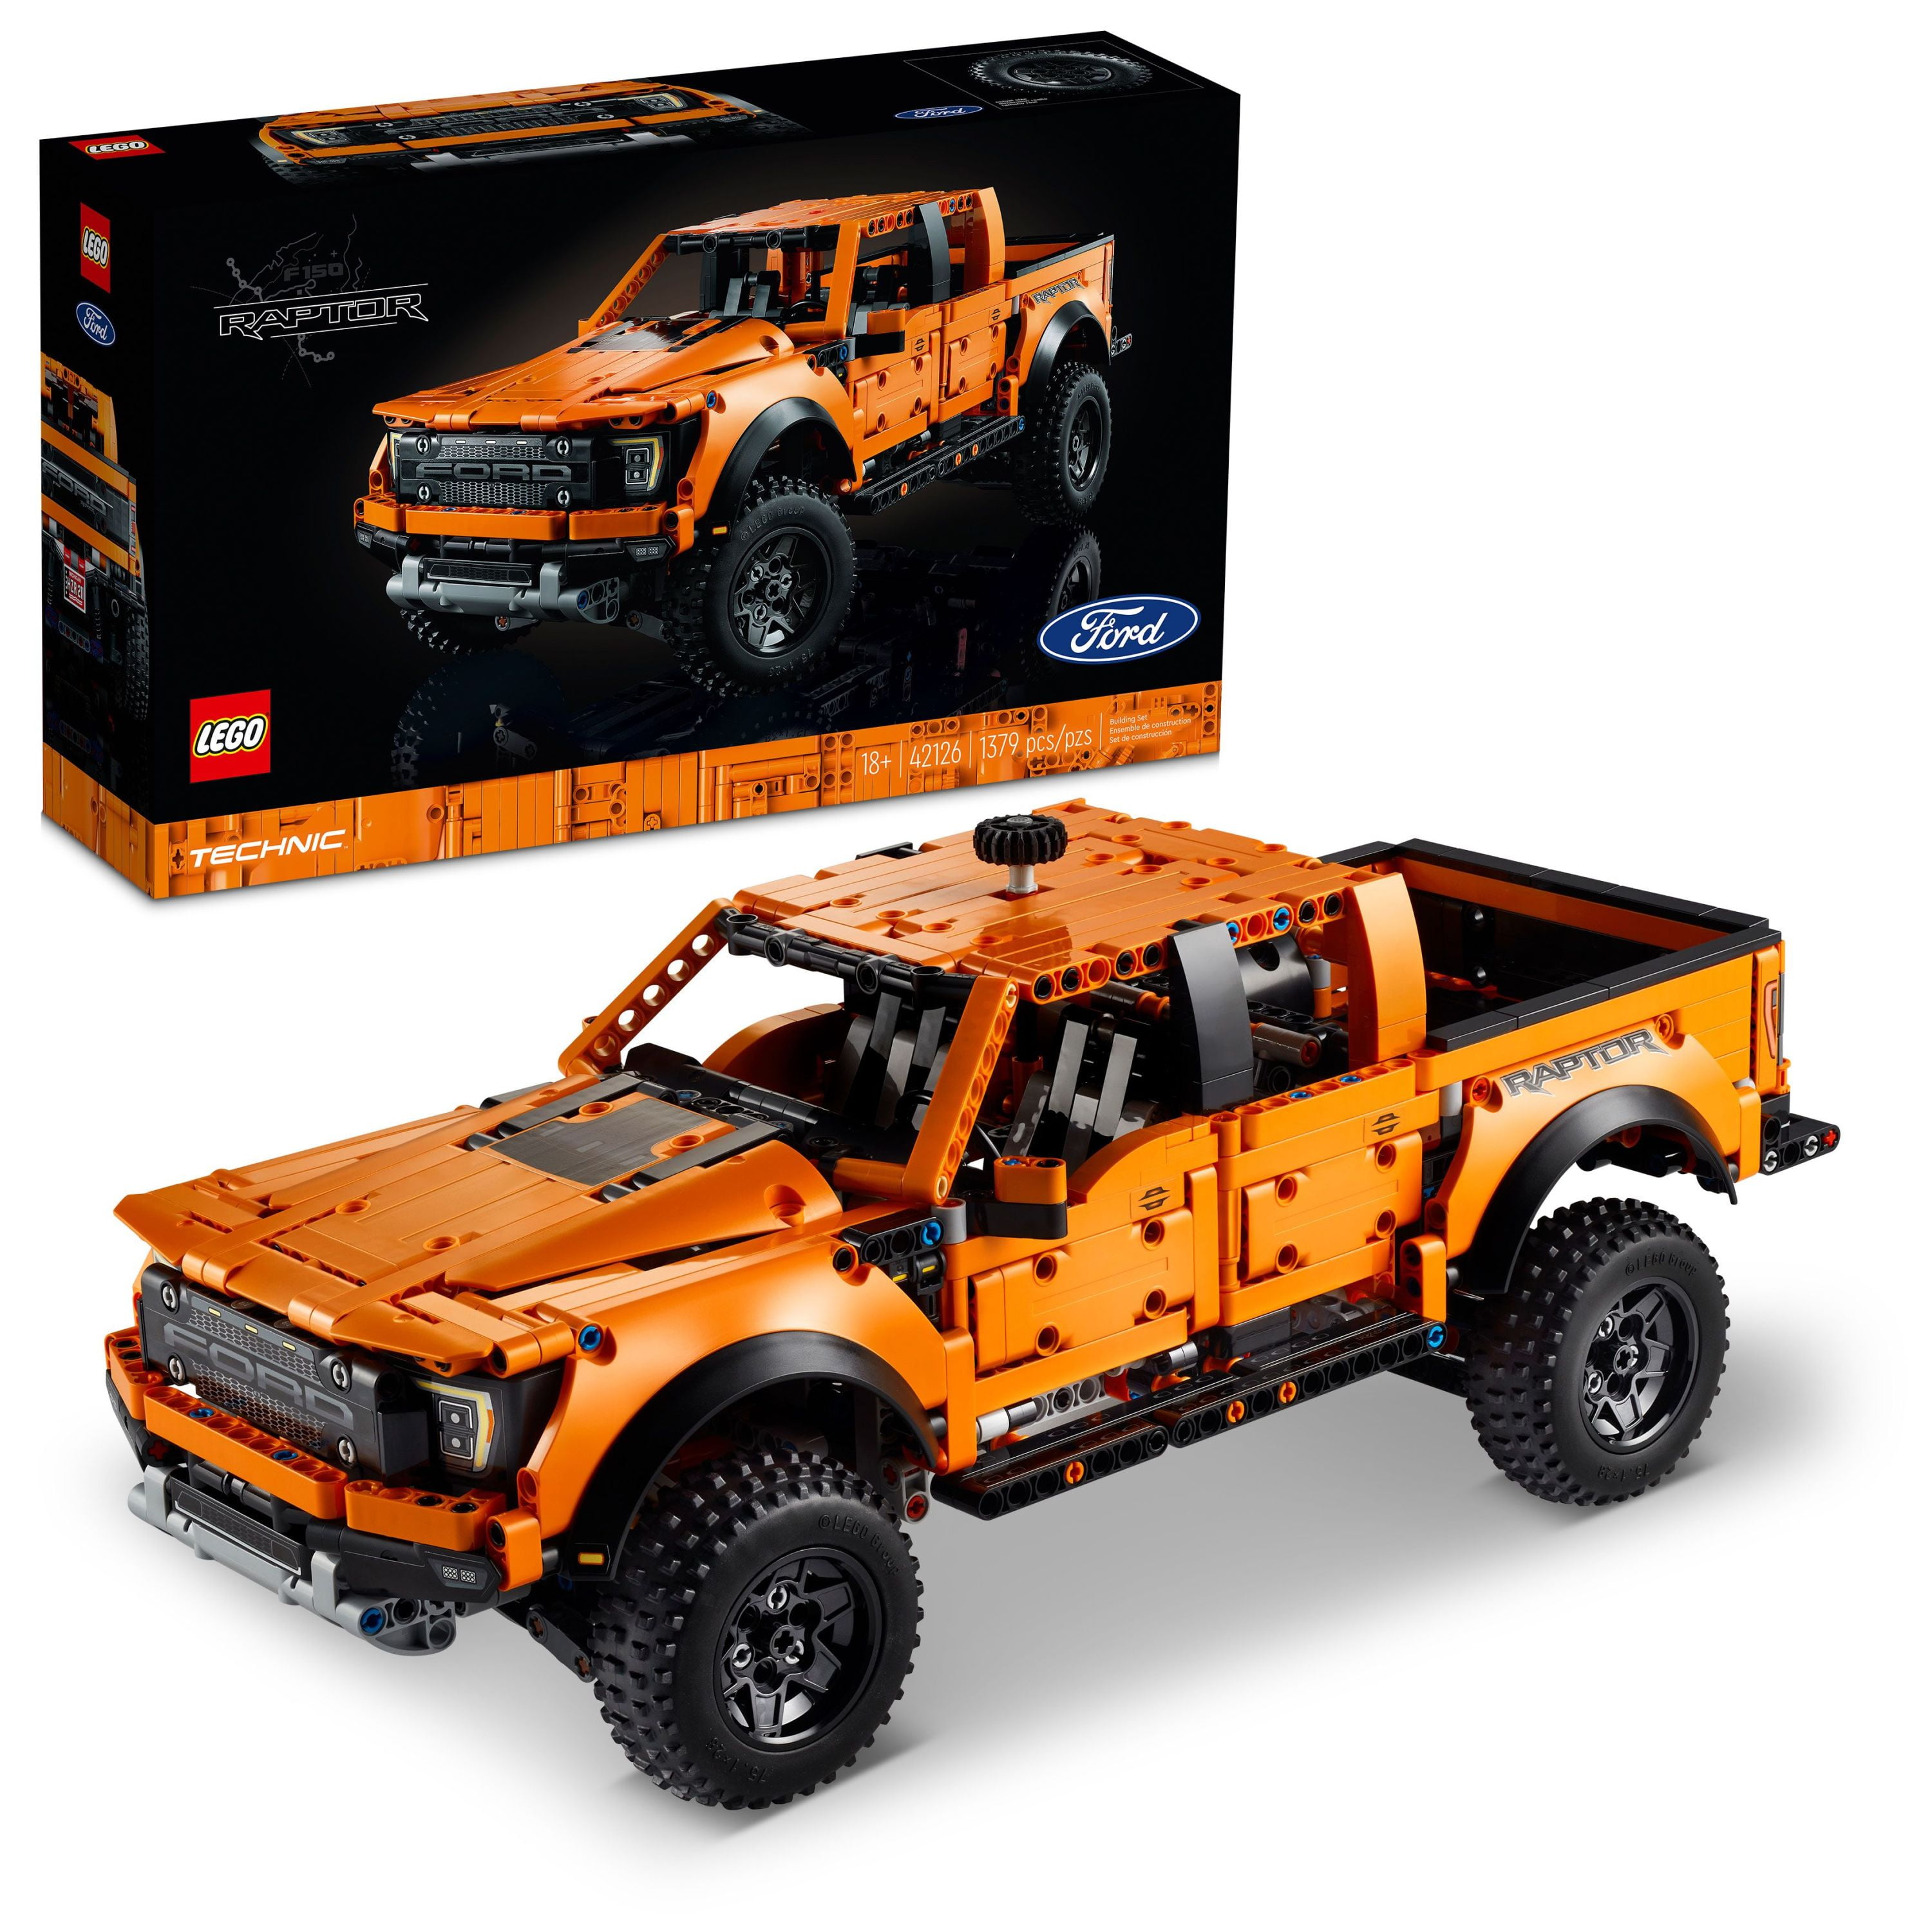 Træde tilbage Prædiken Stort univers LEGO Technic Ford F-150 Raptor 42126 Model Building Kit (1,379 Pieces) -  Walmart.com